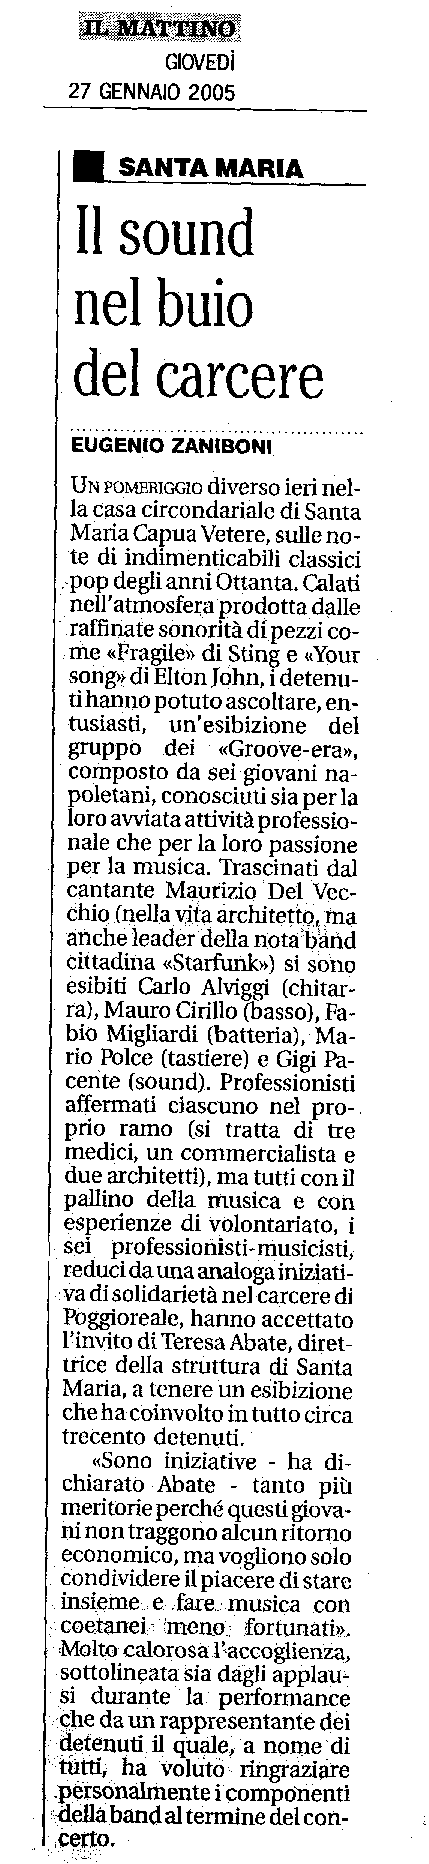 Articolo pubblicato su 'Il Mattino', Giovedì 27 gennaio 2005